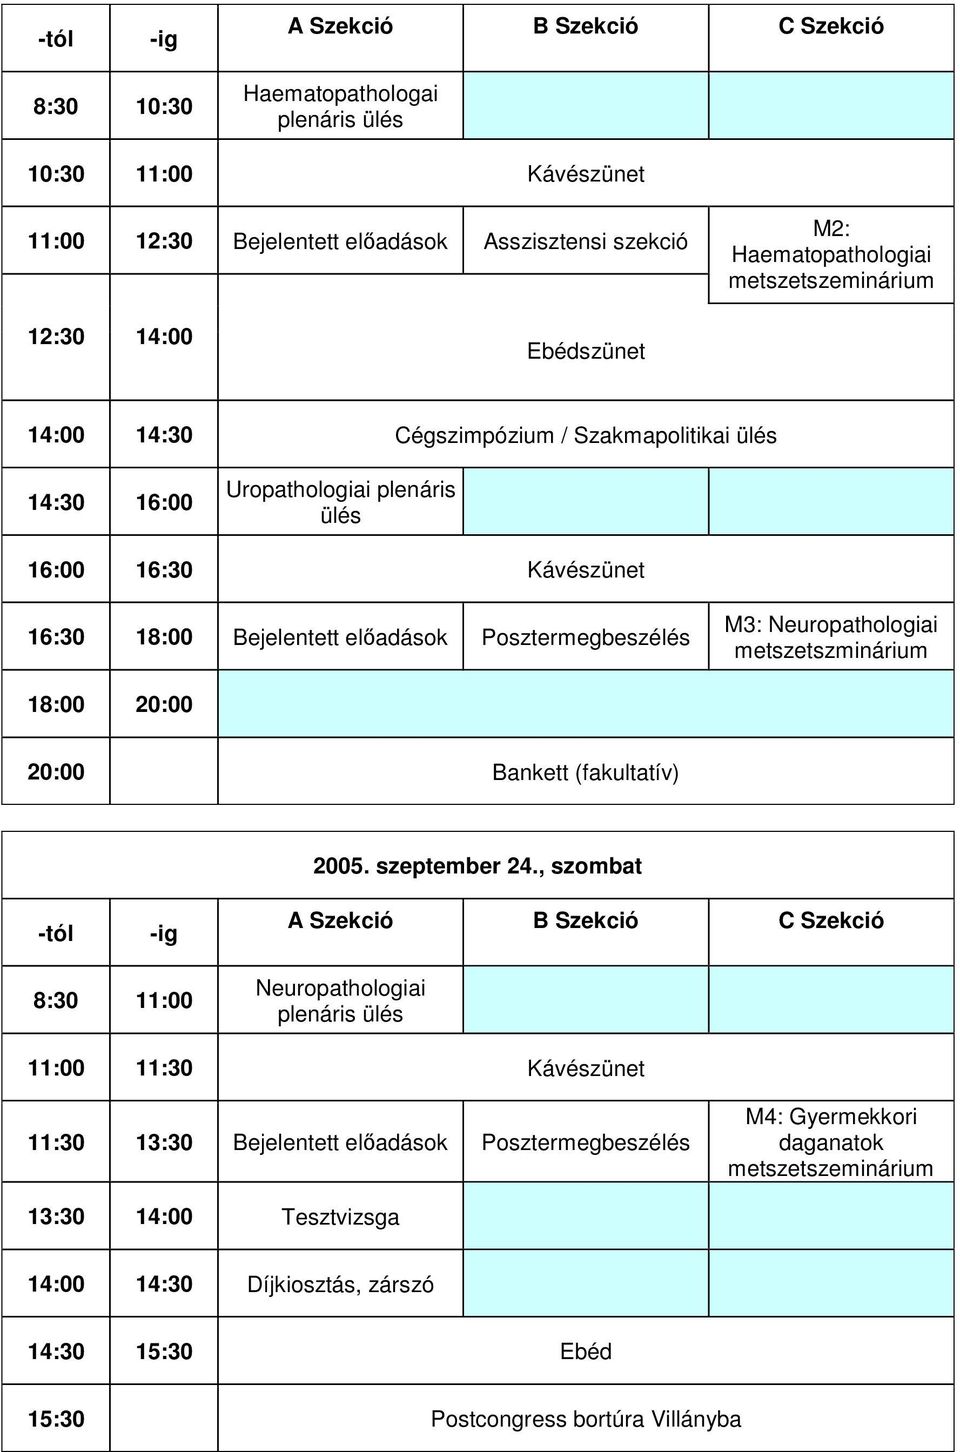 Posztermegbeszélés M3: Neuropathologiai metszetszminárium 18:00 20:00 20:00 Bankett (fakultatív) 2005. szeptember 24.